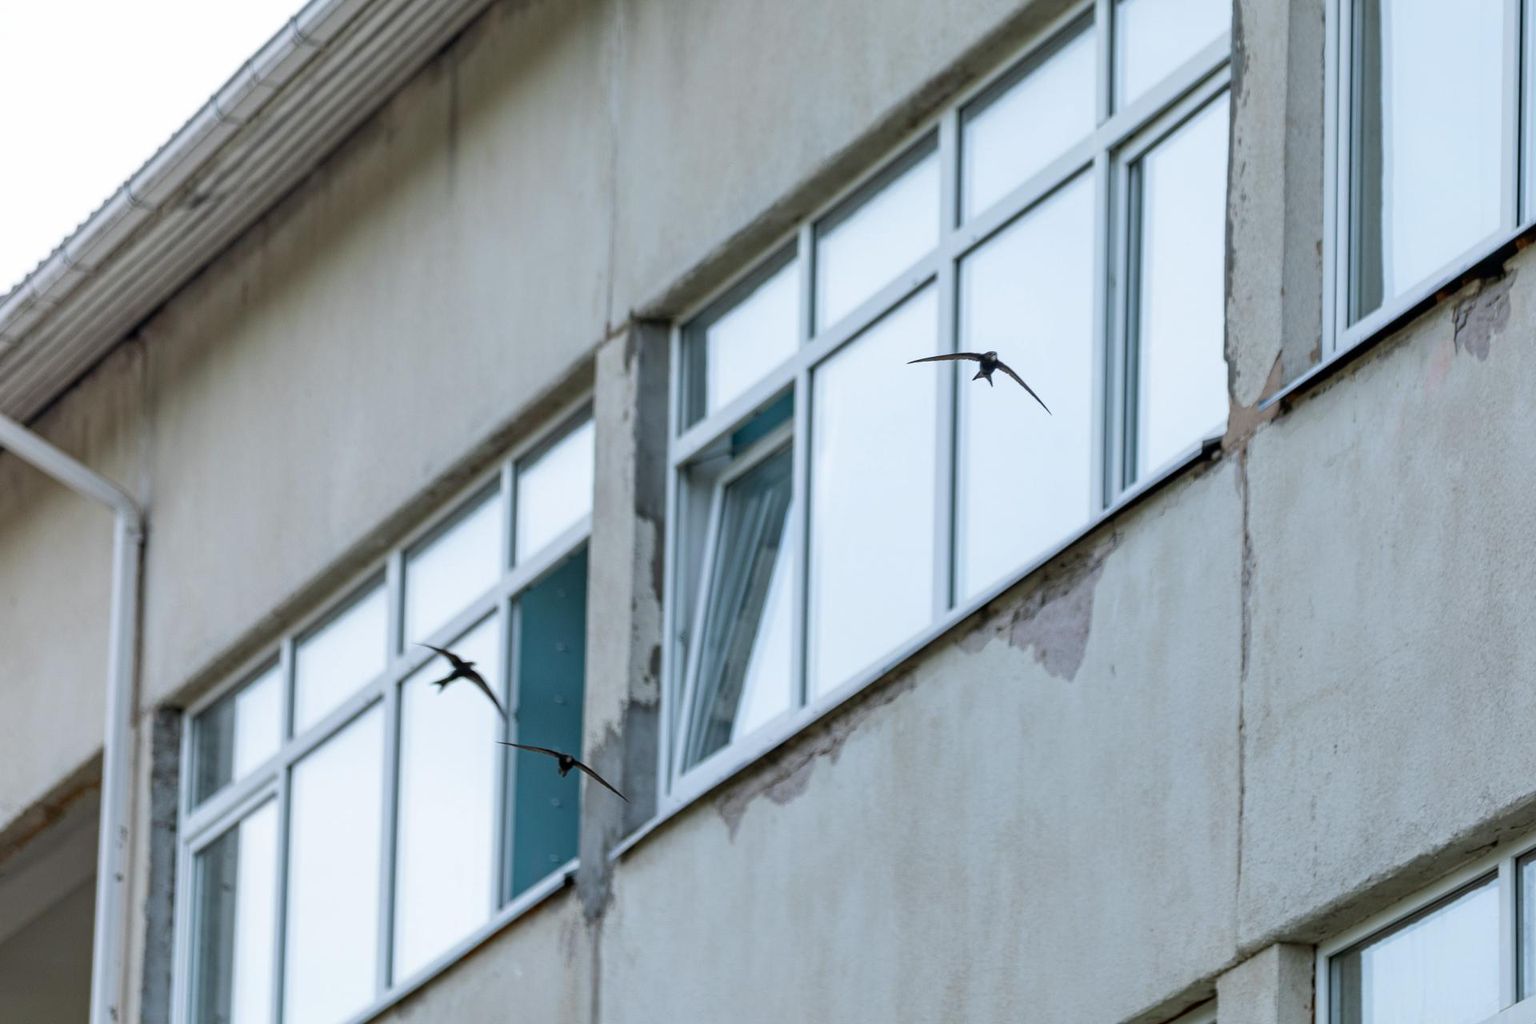 Esmaspäeva õhtul oli Puka vana koolimaja juures, eriti kolmanda korruse akende läheduses näha palju linnukesi lendamas.